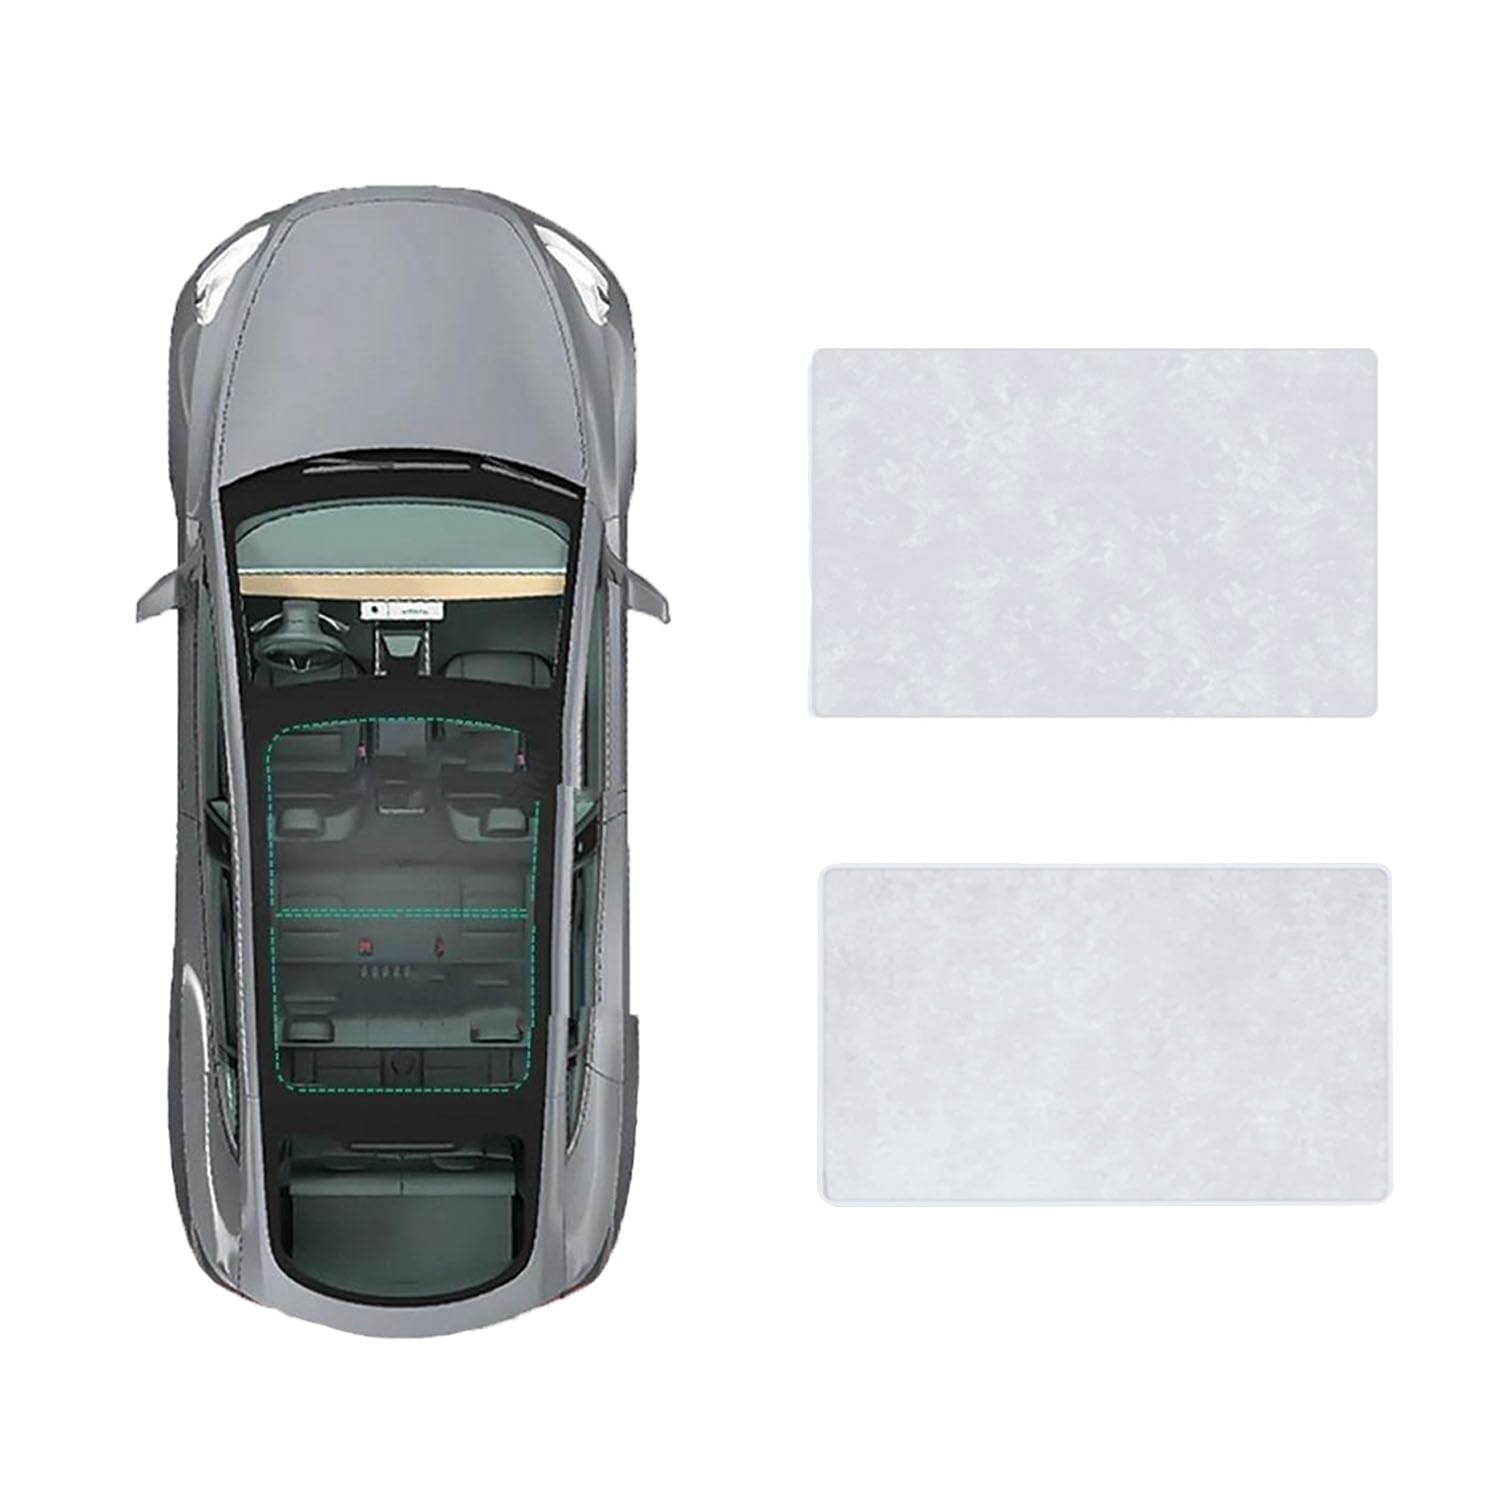 Für Mercedes Benz E-Class 2005-2009 Auto-Schiebedach-Beschattung,Dach Wärme Isolierung Anti-UV Visier Auto Zubehör,B-Gray white Suede von ANRAM